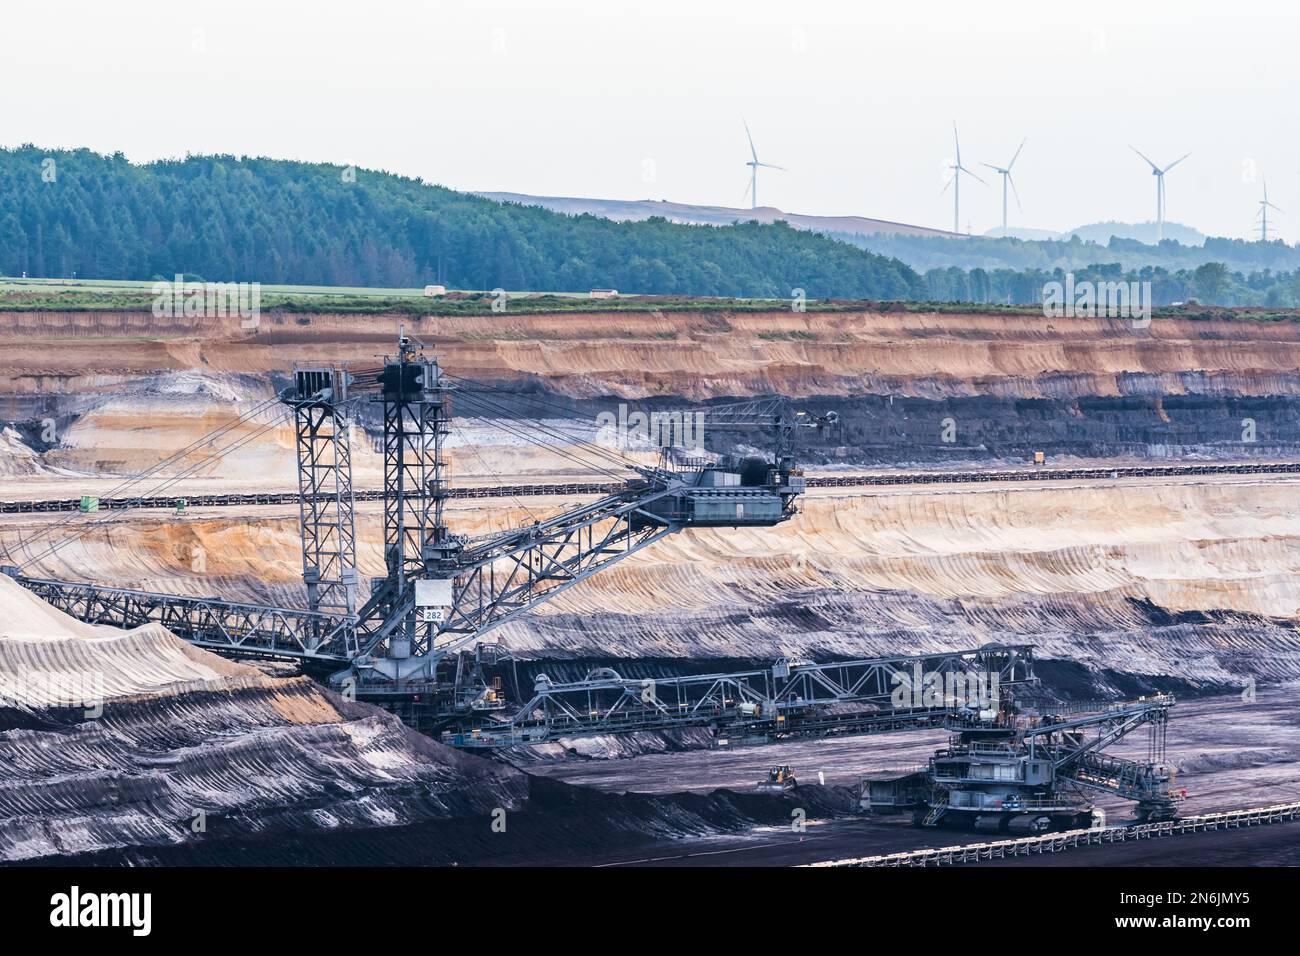 Enorme escavatore a pala nella miniera di lignite opencast Hambach, nell'area del Reno in Germania Foto Stock